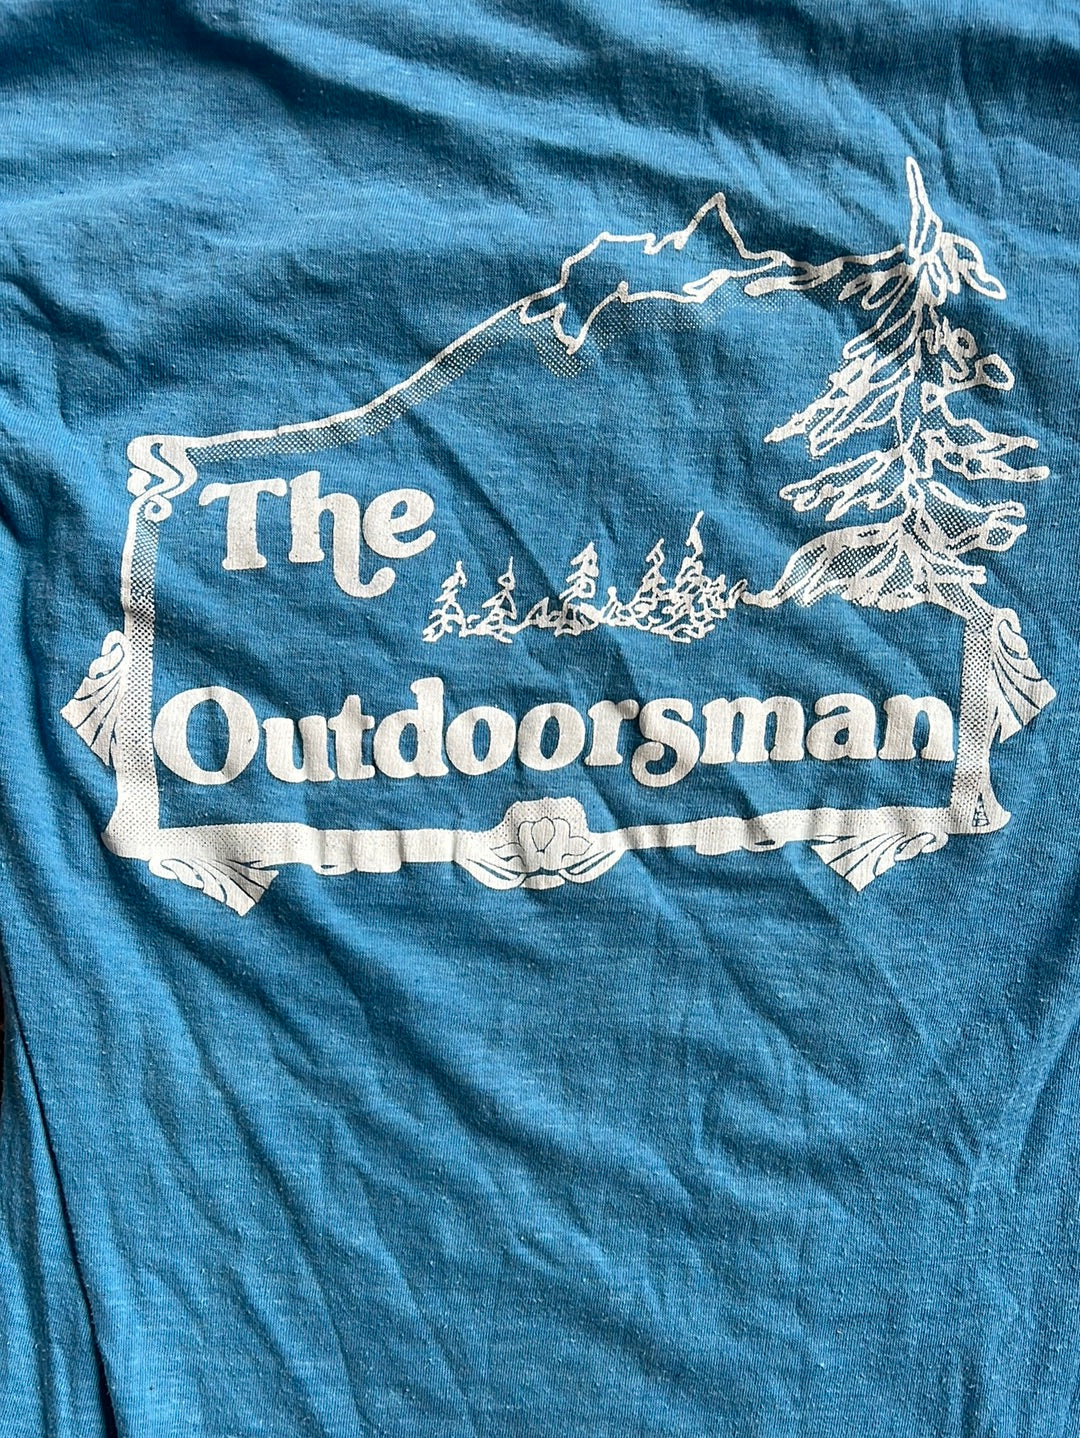 Vintage The Outdoorsman Tee